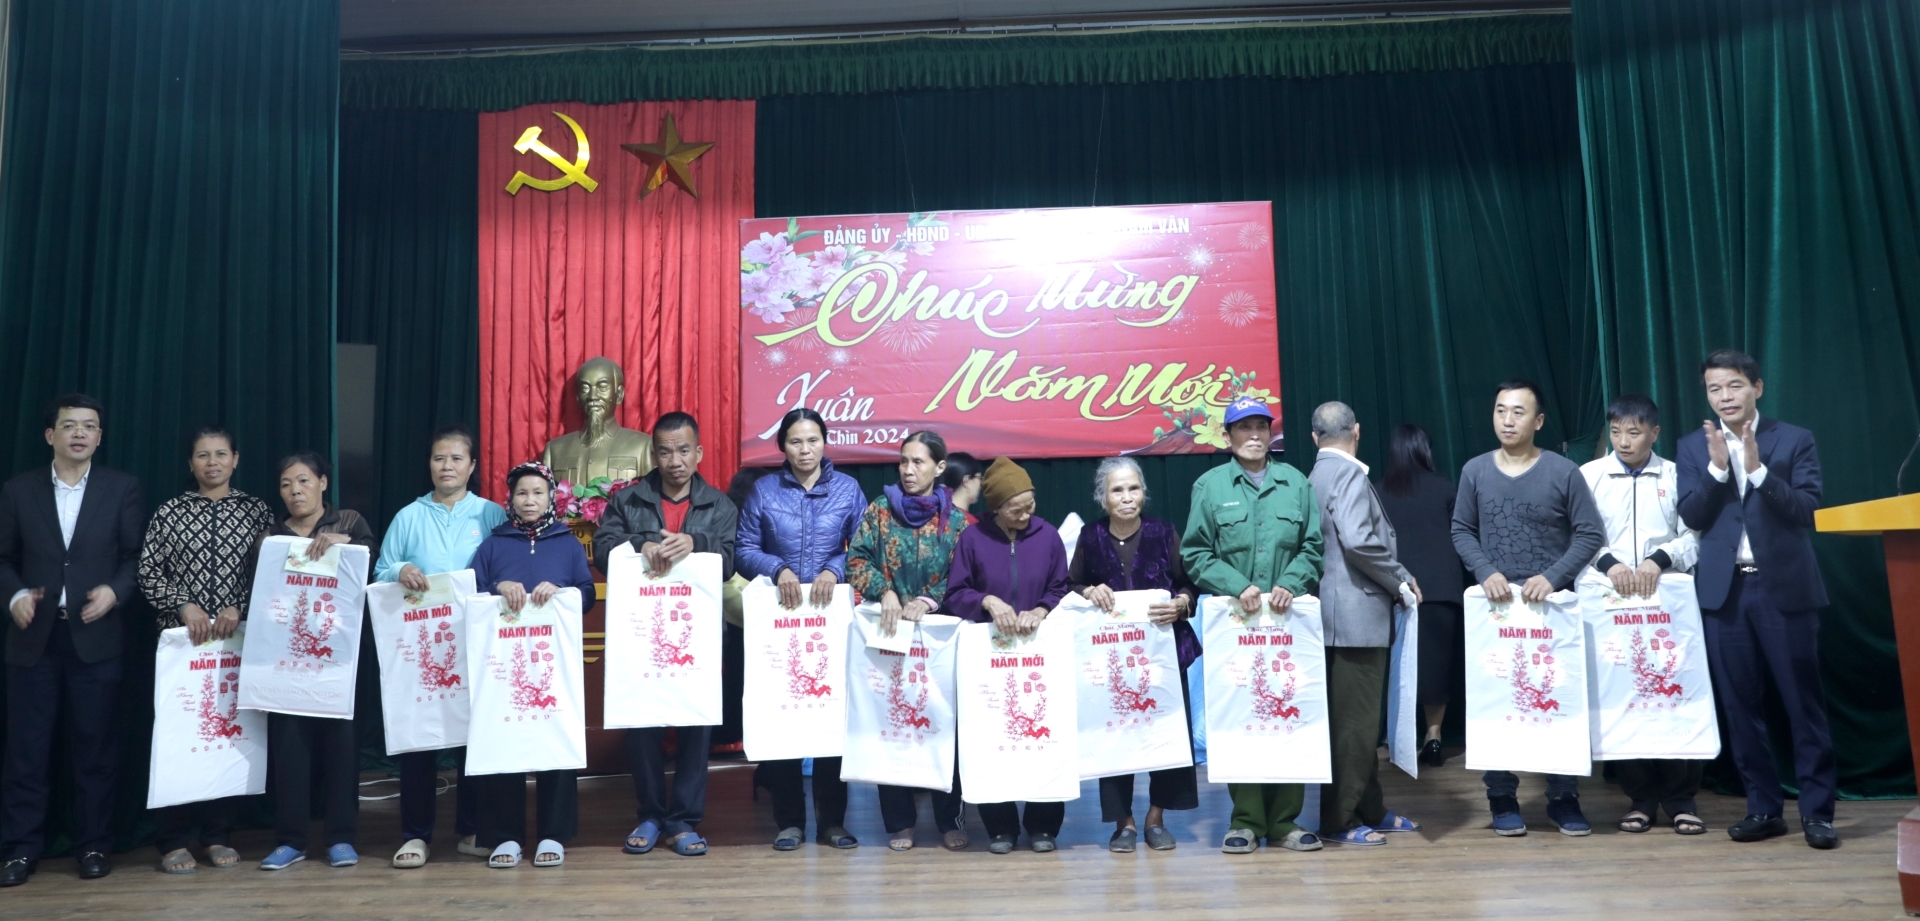 Đồng chí Vũ Thanh Mai, Phó Trưởng Ban Tuyên giáo Trung ương và lãnh đạo Ban Tuyên giáo Tỉnh ủy trao tặng quà trẻ em có hoàn cảnh khó khăn tại xã Nam Vân, thành phố Nam Định, tỉnh Nam Định.